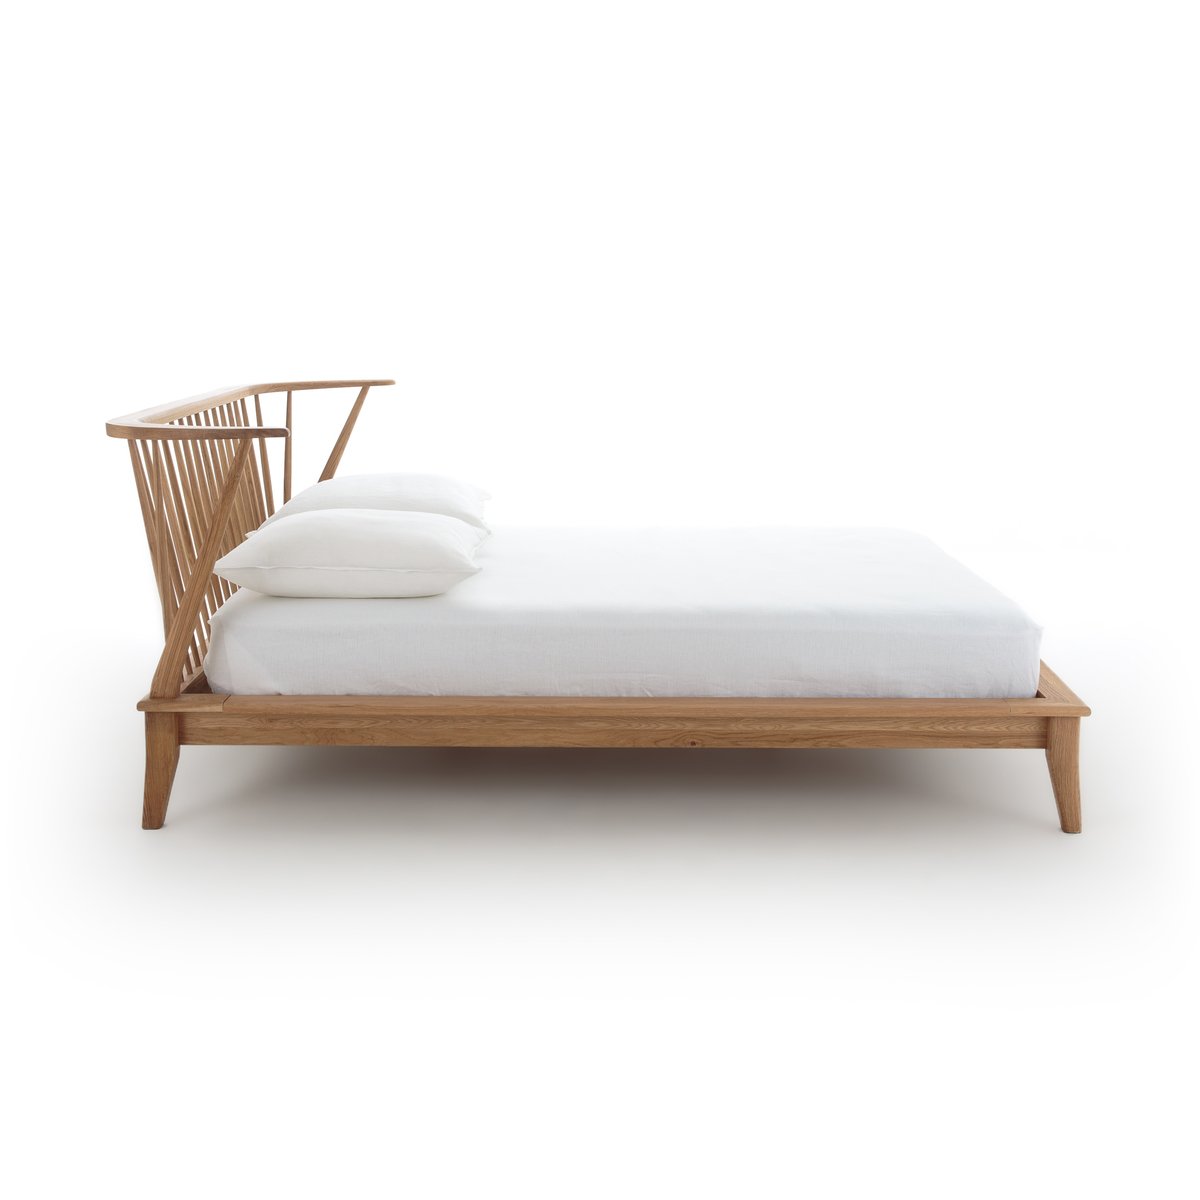 Кровать La Redoute Из массива дуба Windsor 160 x 200 см каштановый, размер 160 x 200 см - фото 3